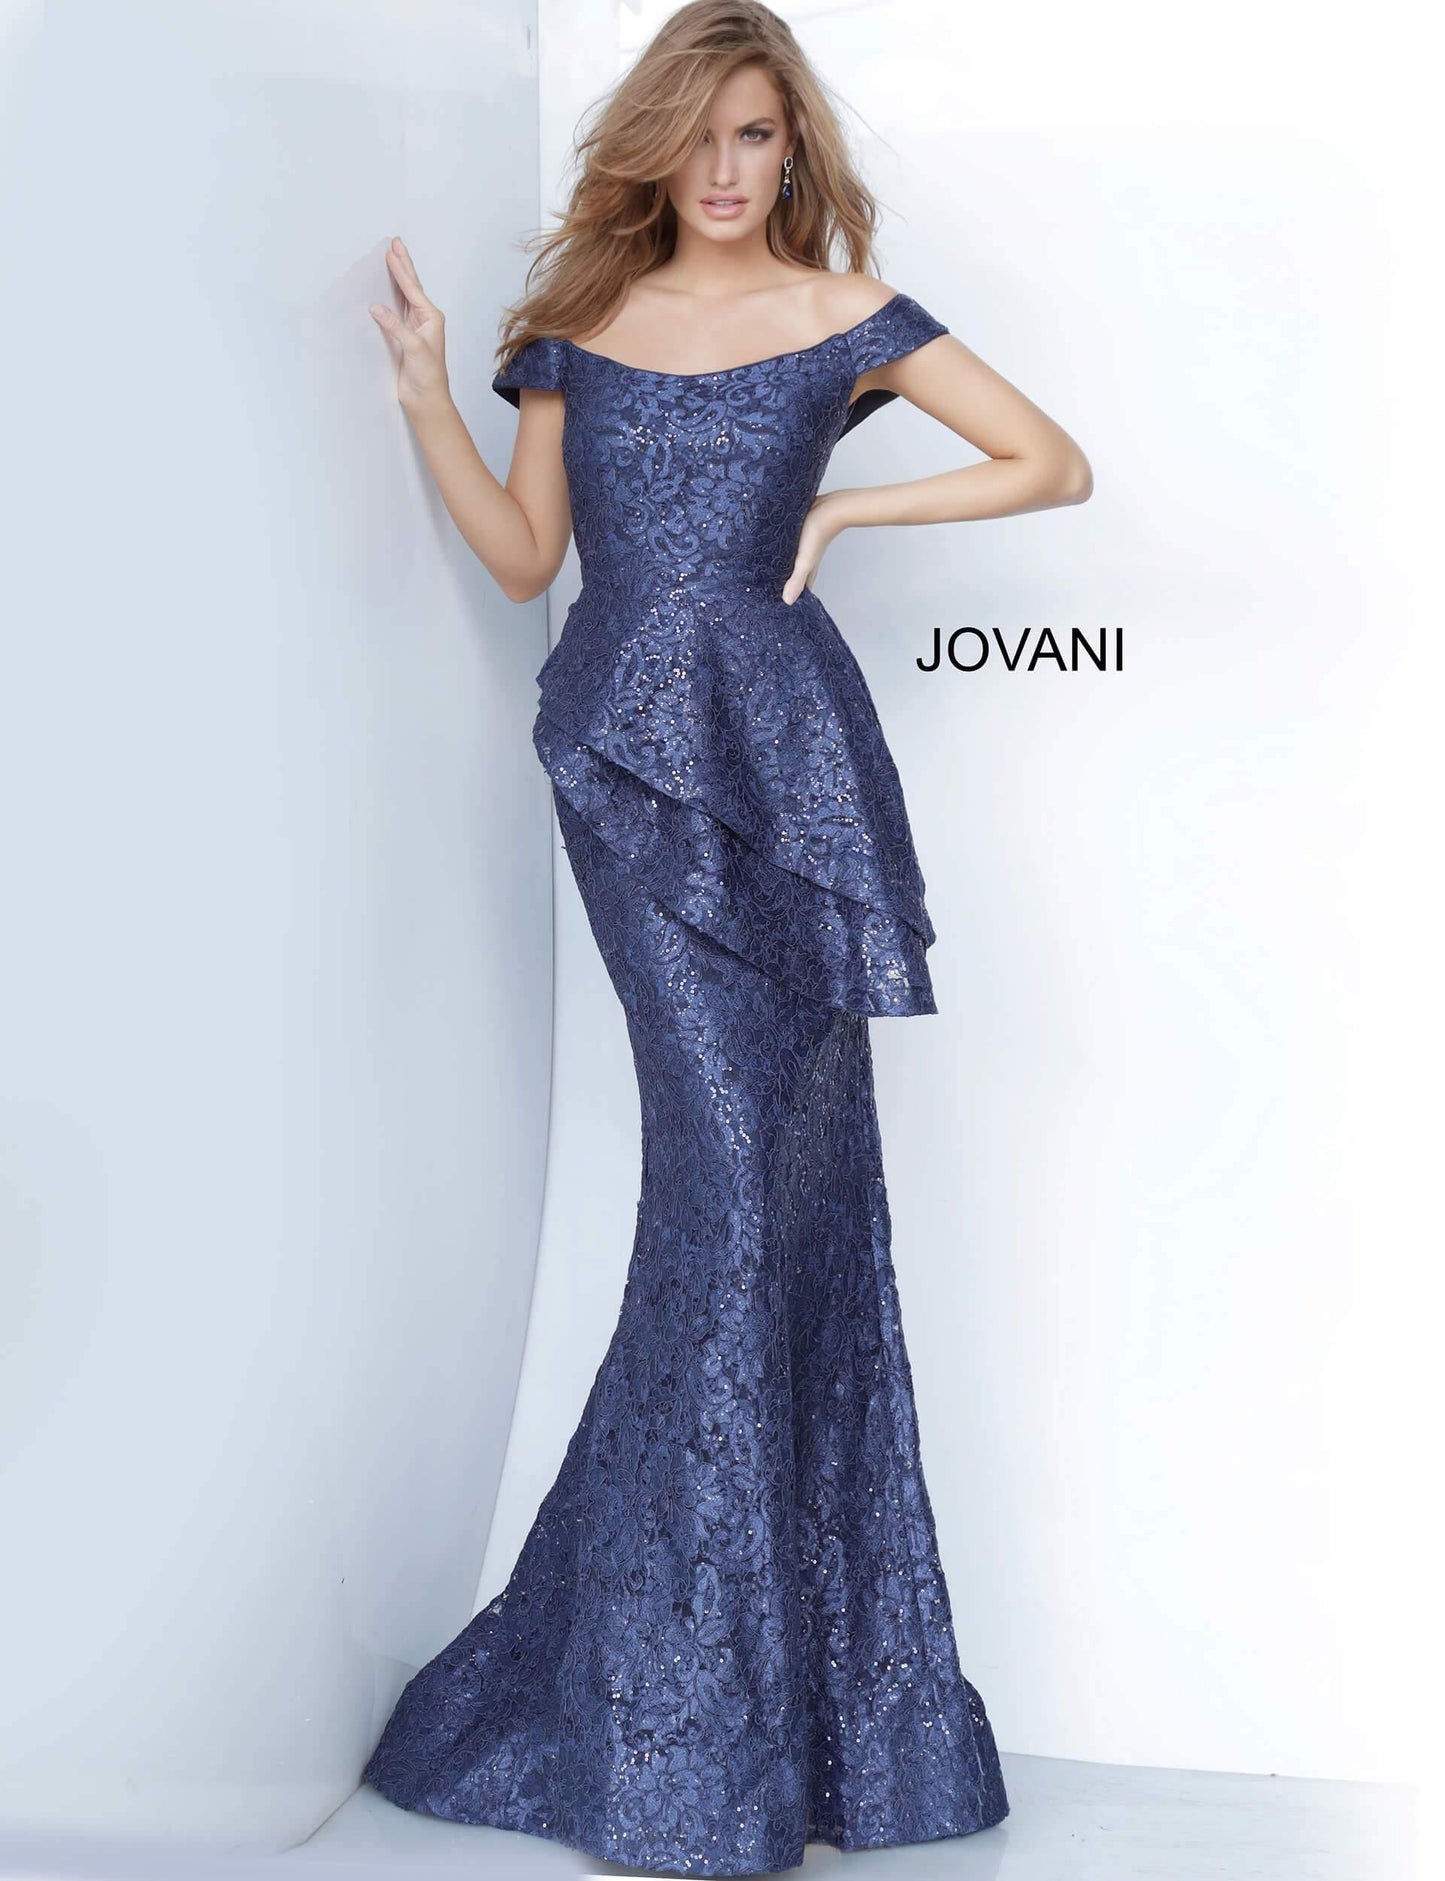 JVN By Jovani Long Formal Lace Dress JVN02911 - The Dress Outlet Jovani